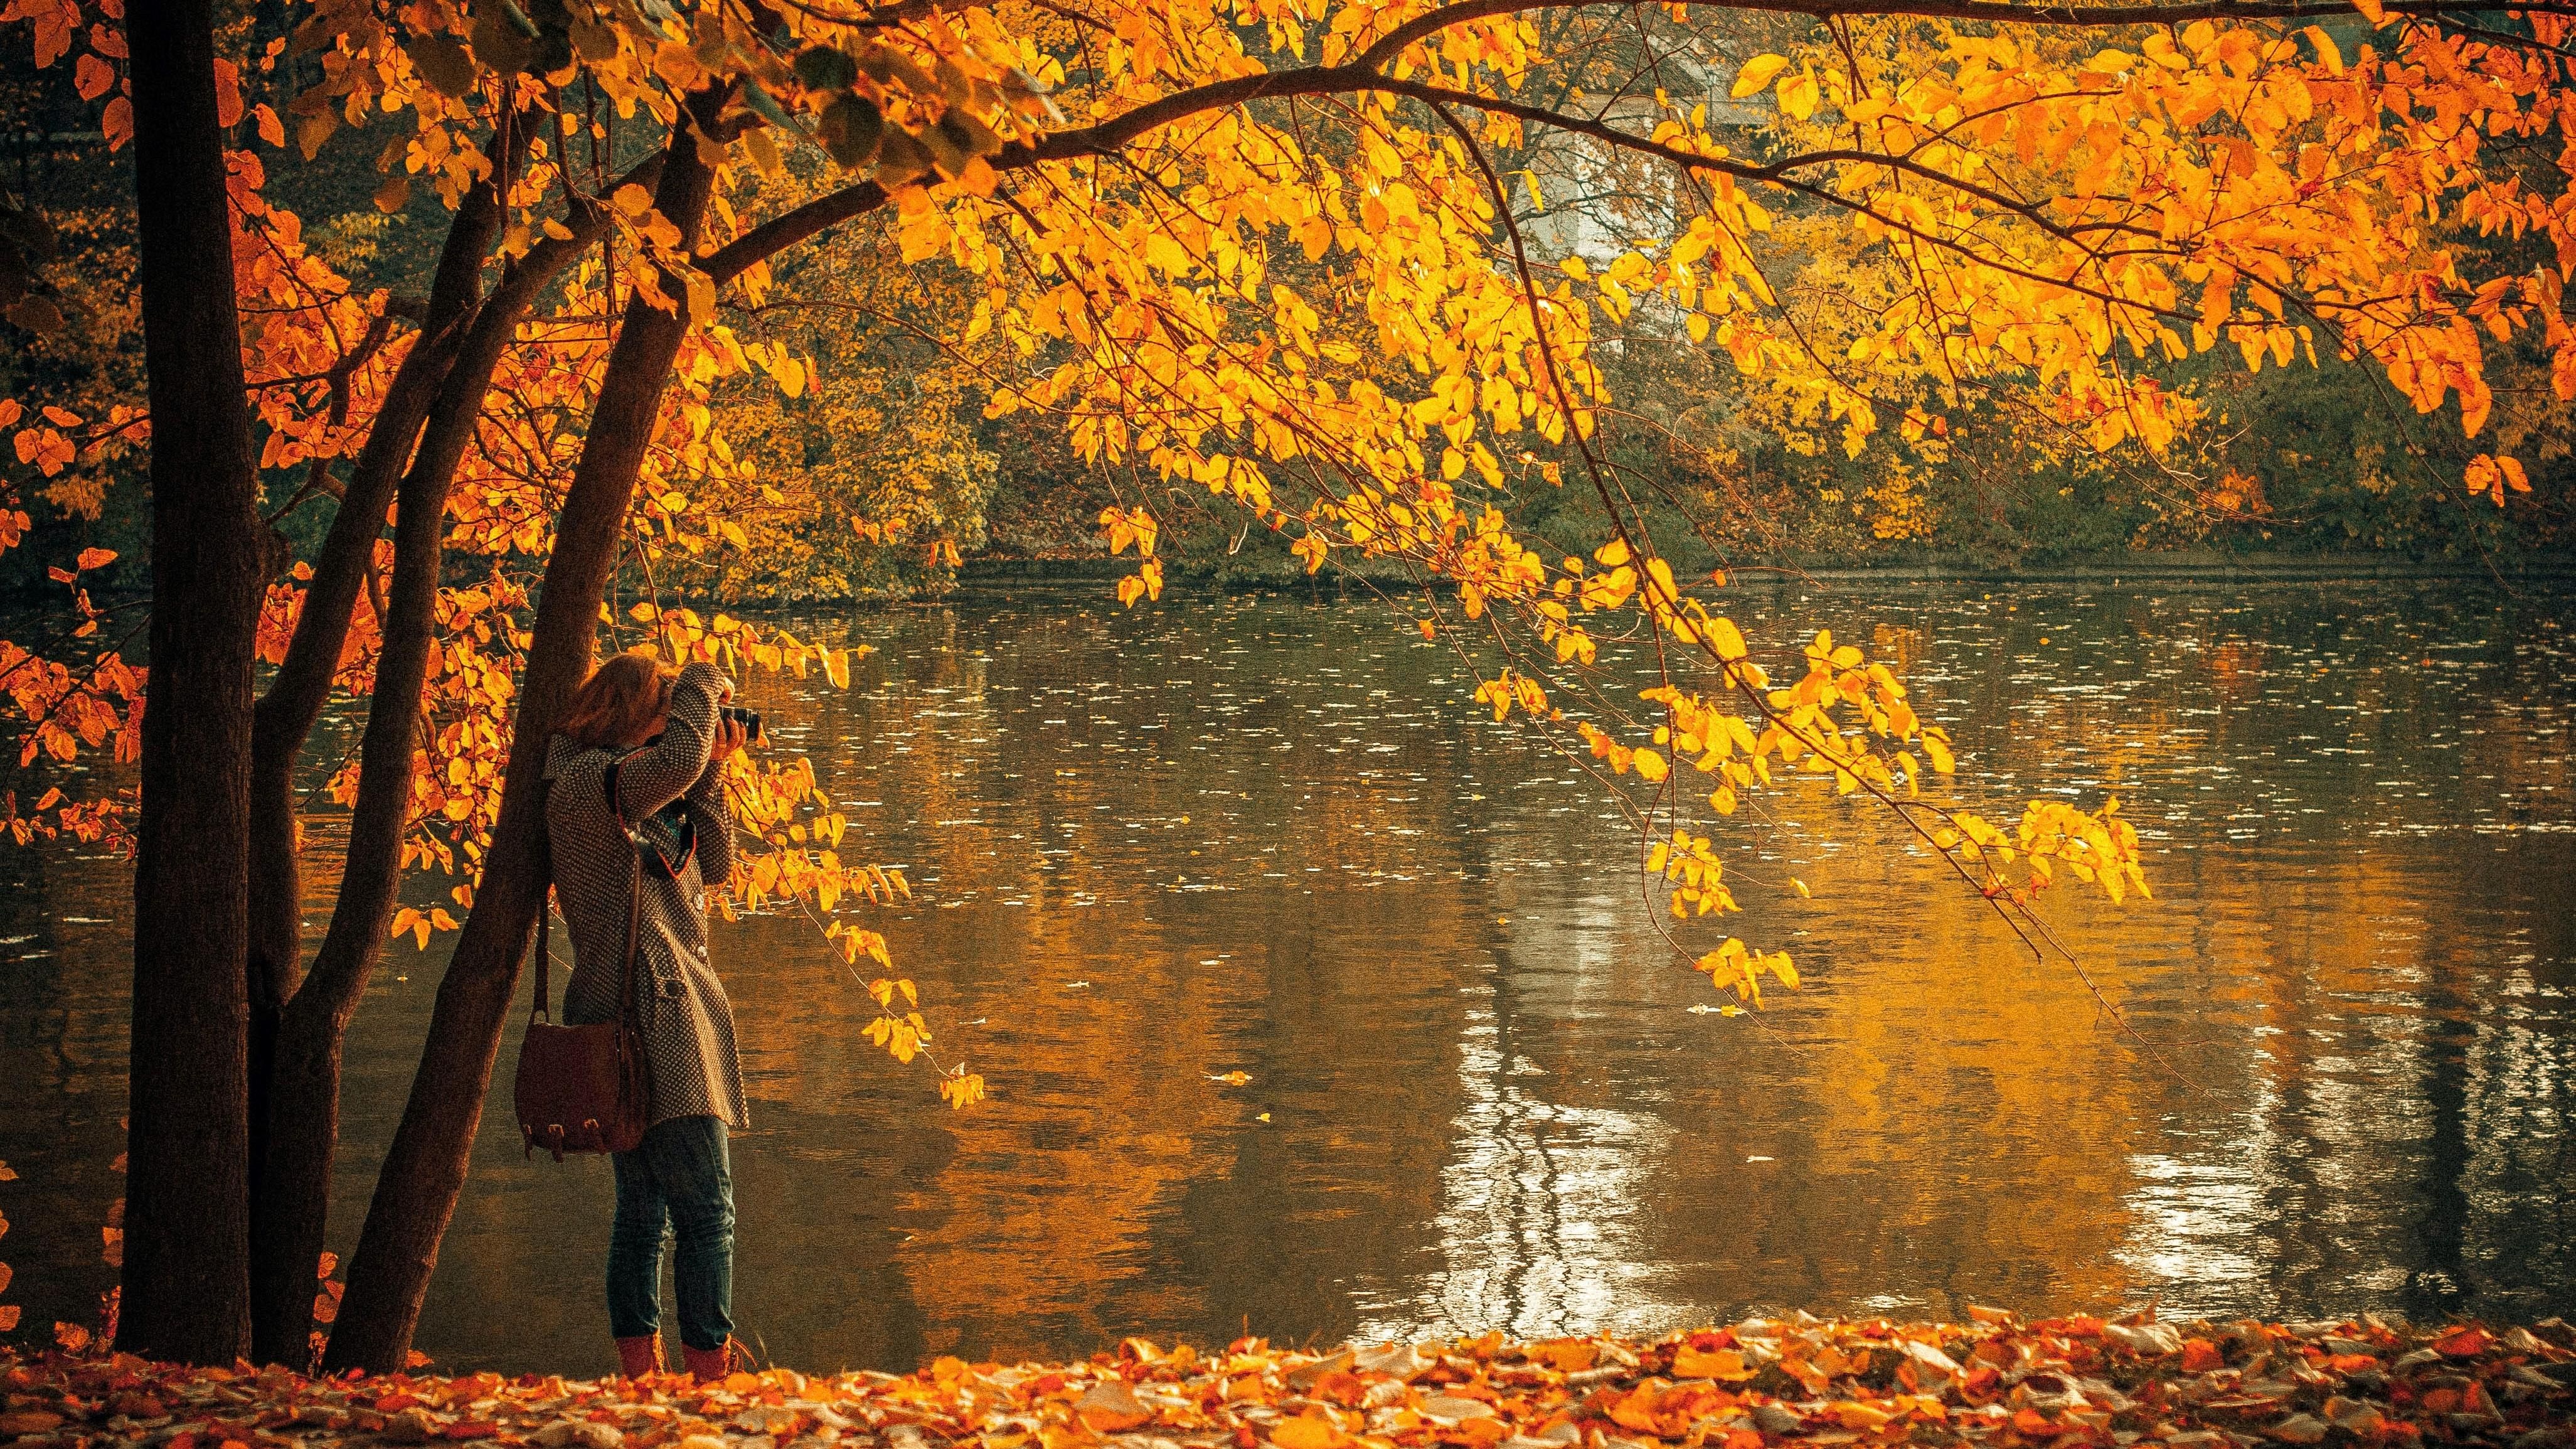 Egy lány egy tó mellett fotózza az őszi tájat